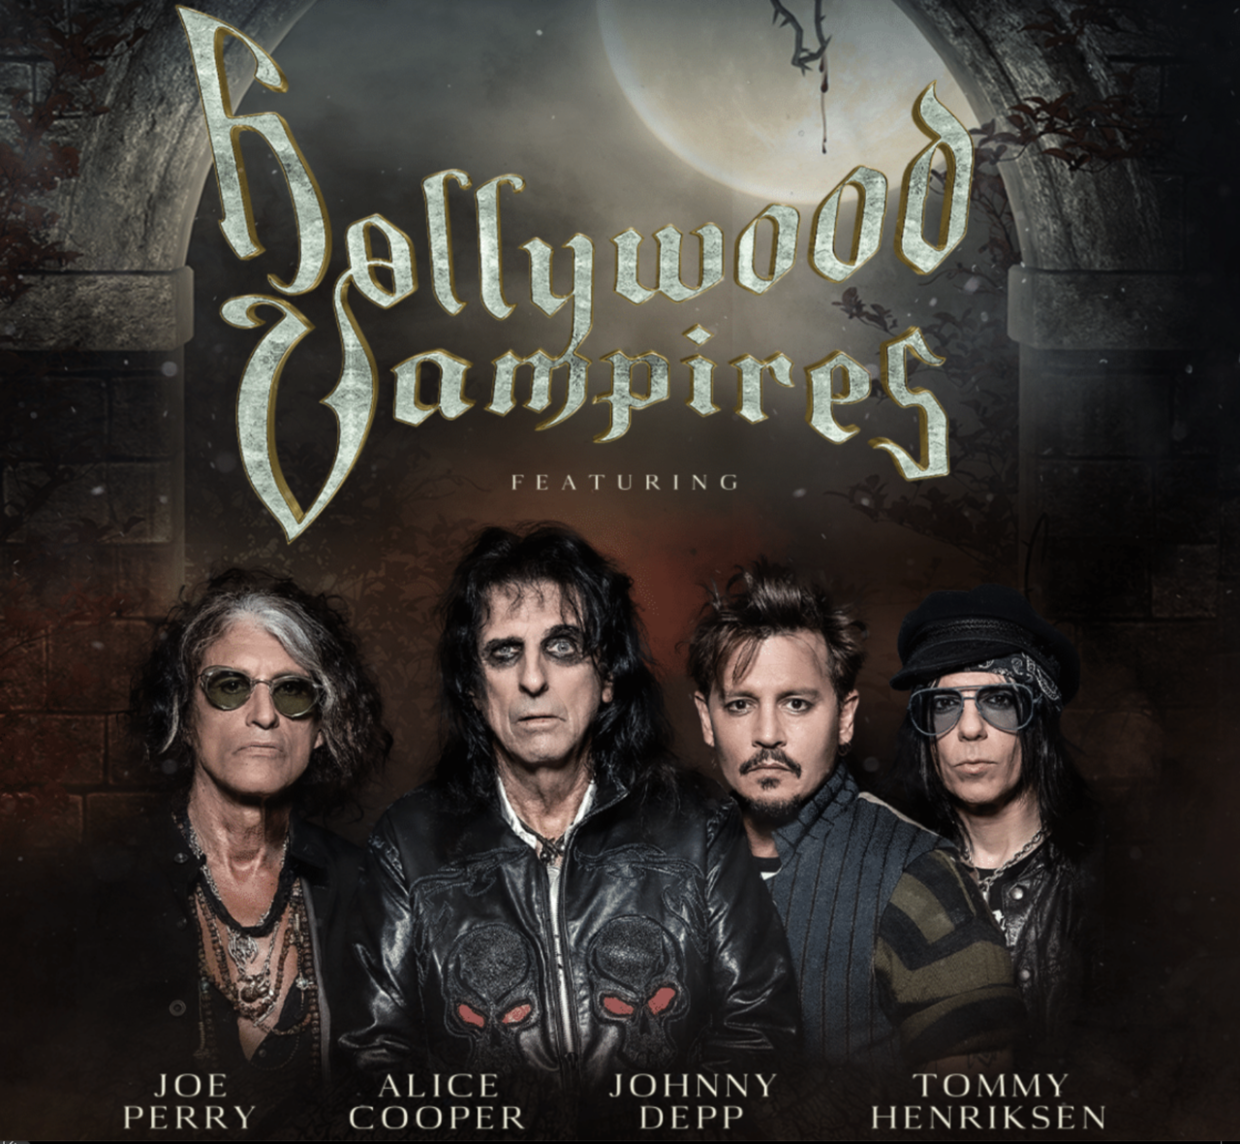 Hollywood Vampires 2023 UK Tour